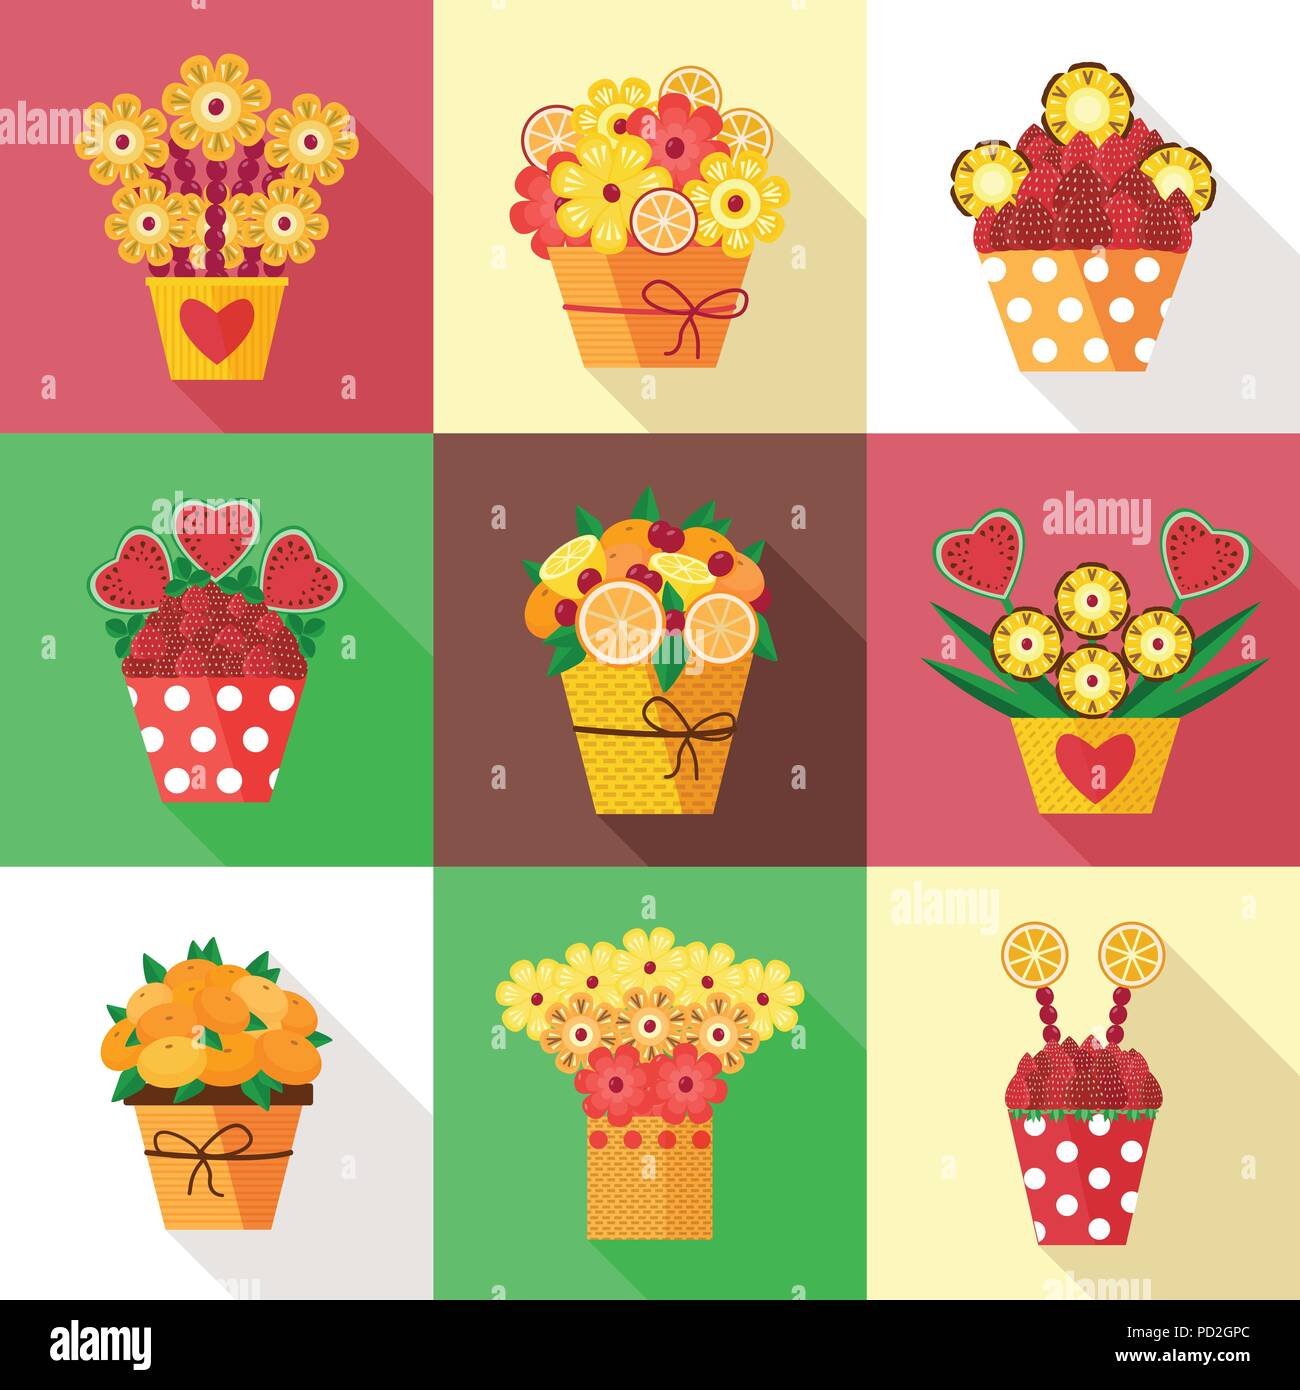 Un assortimento di coloratissimi frutti e bacche disposte in un bouquet decorativo. Vasi differenti con frutti in fiore scolpito come fiori. Fragole fresche, pi Illustrazione Vettoriale